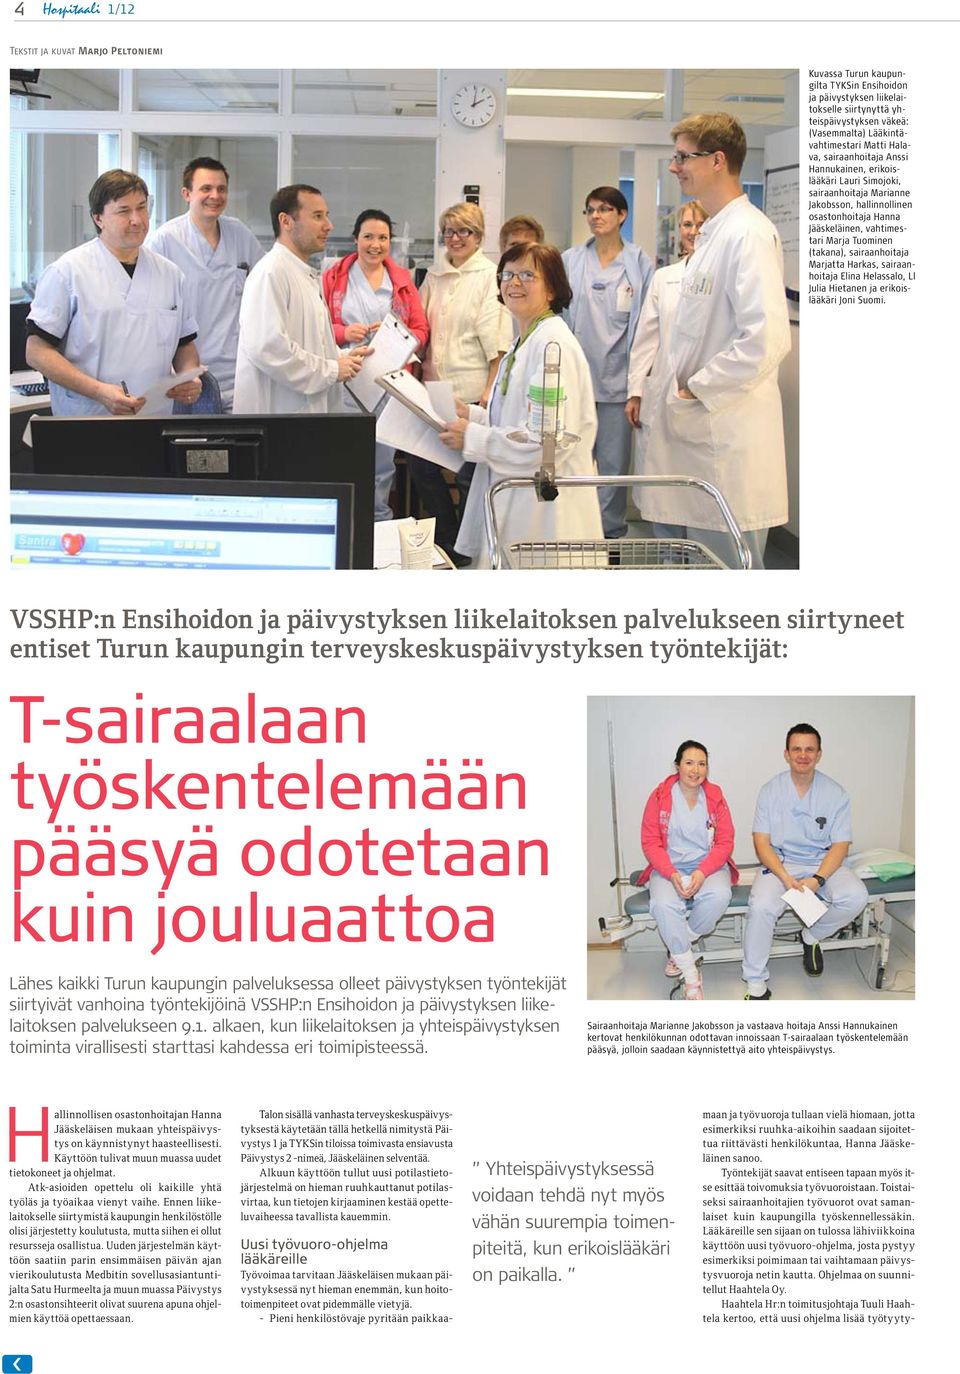 Marja Tuominen (takana), sairaanhoitaja Marjatta Harkas, sairaanhoitaja Elina Helassalo, Ll Julia Hietanen ja erikoislääkäri Joni Suomi.